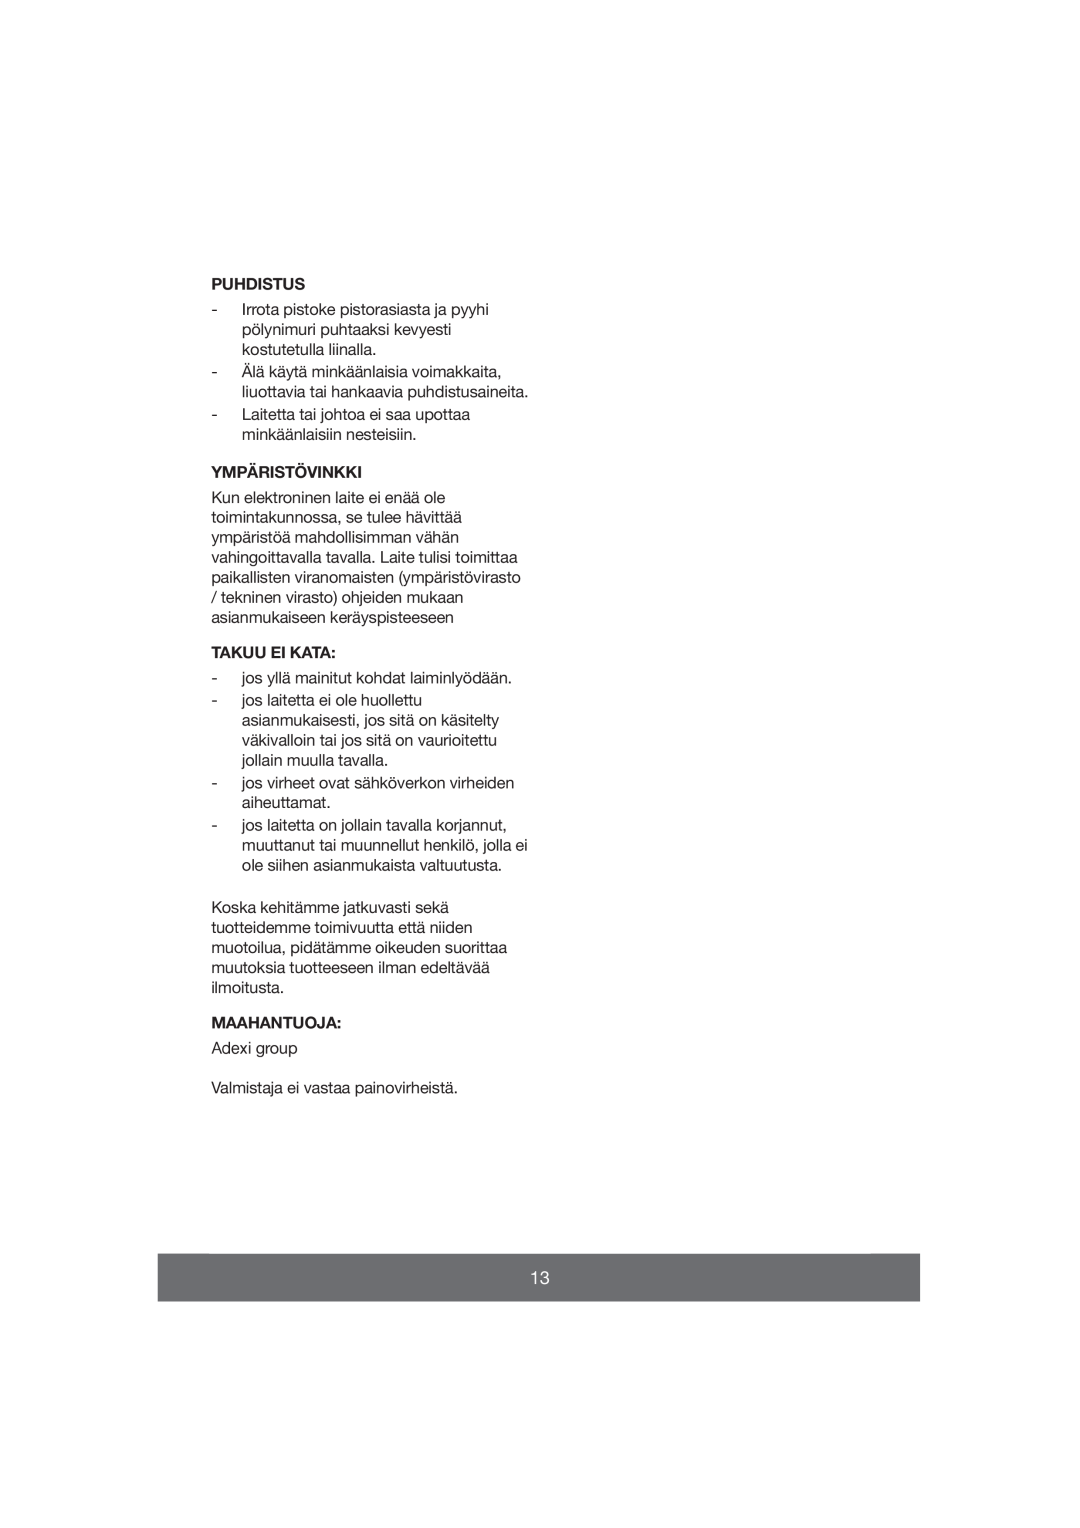 Melissa 640-059 manual Puhdistus, Ympäristövinkki, Takuu Ei Kata, Maahantuoja 